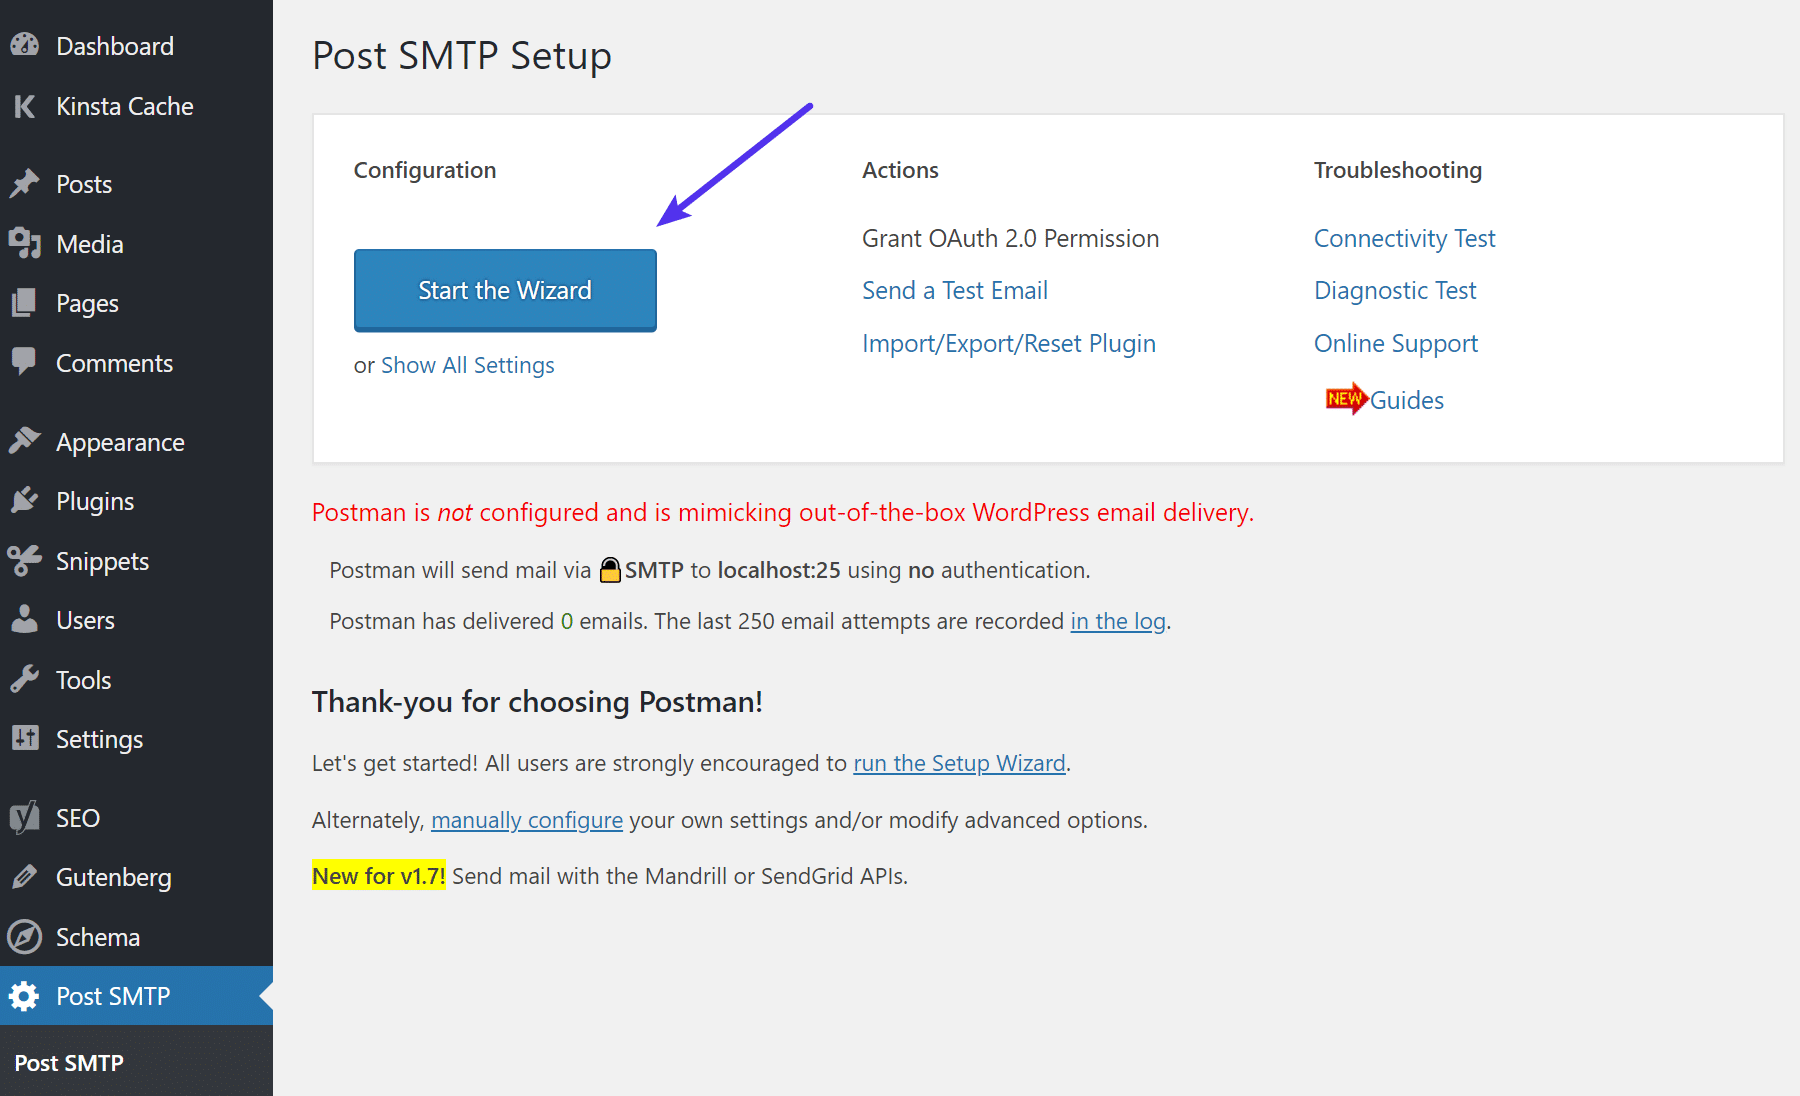 Début de l'assiatant de Post SMTP